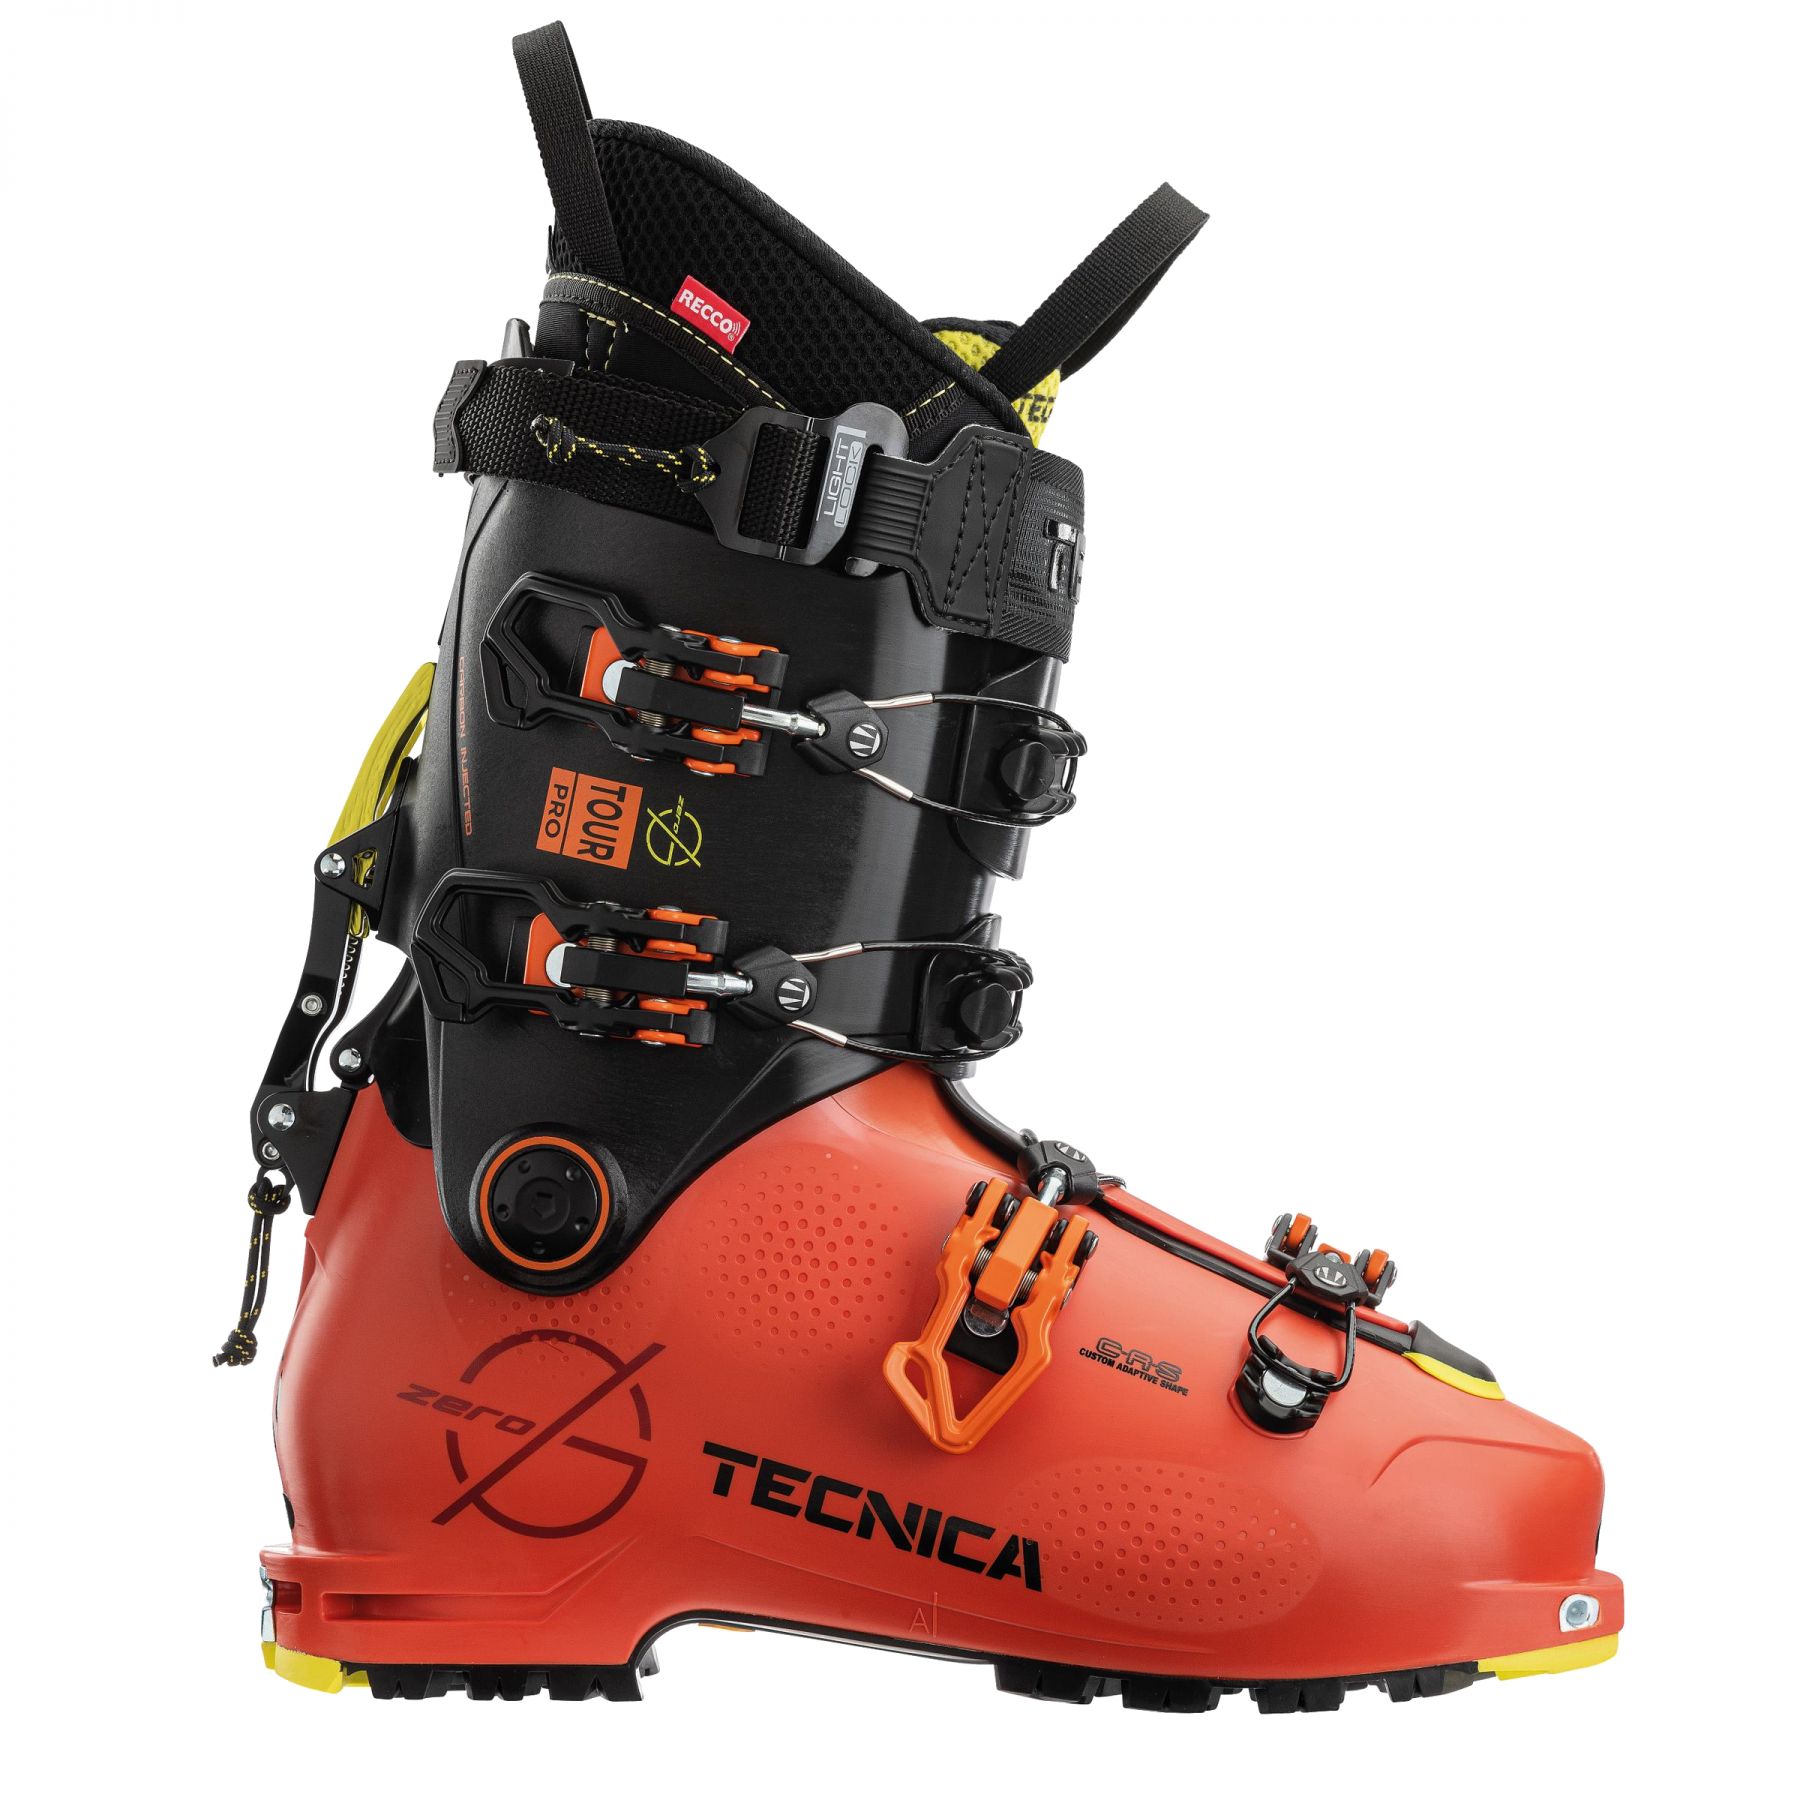 Billede af Tecnica Zero G Tour Pro, skistøvler, herre, orange/sort